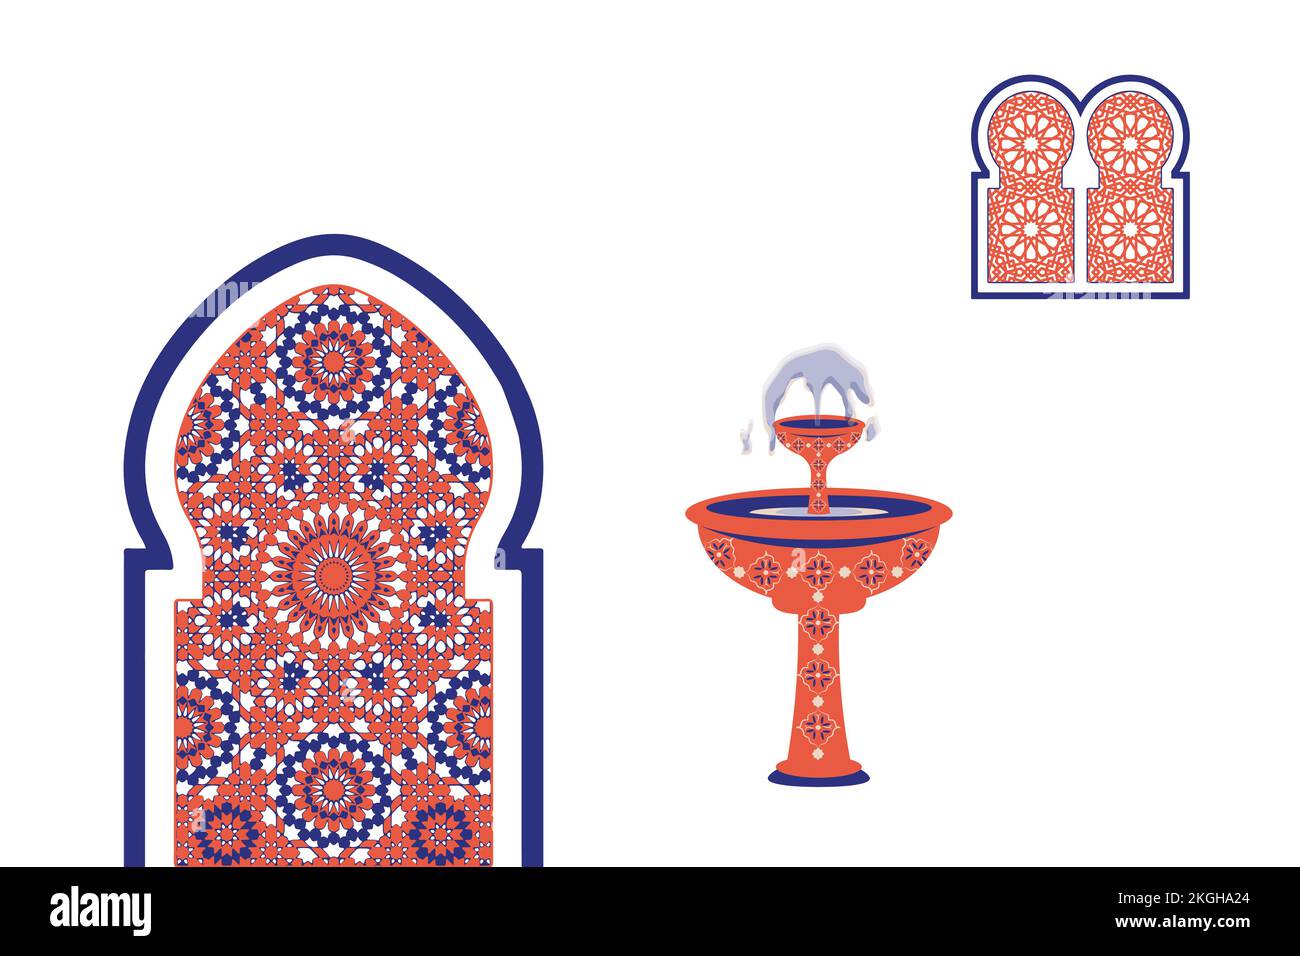 Architettura astratta poster semplice geometrico. Marocchino contemporaneo astratto geometrico. Finestre, porte e scale in stile arabo-orientale islamico. Illustrazione Vettoriale